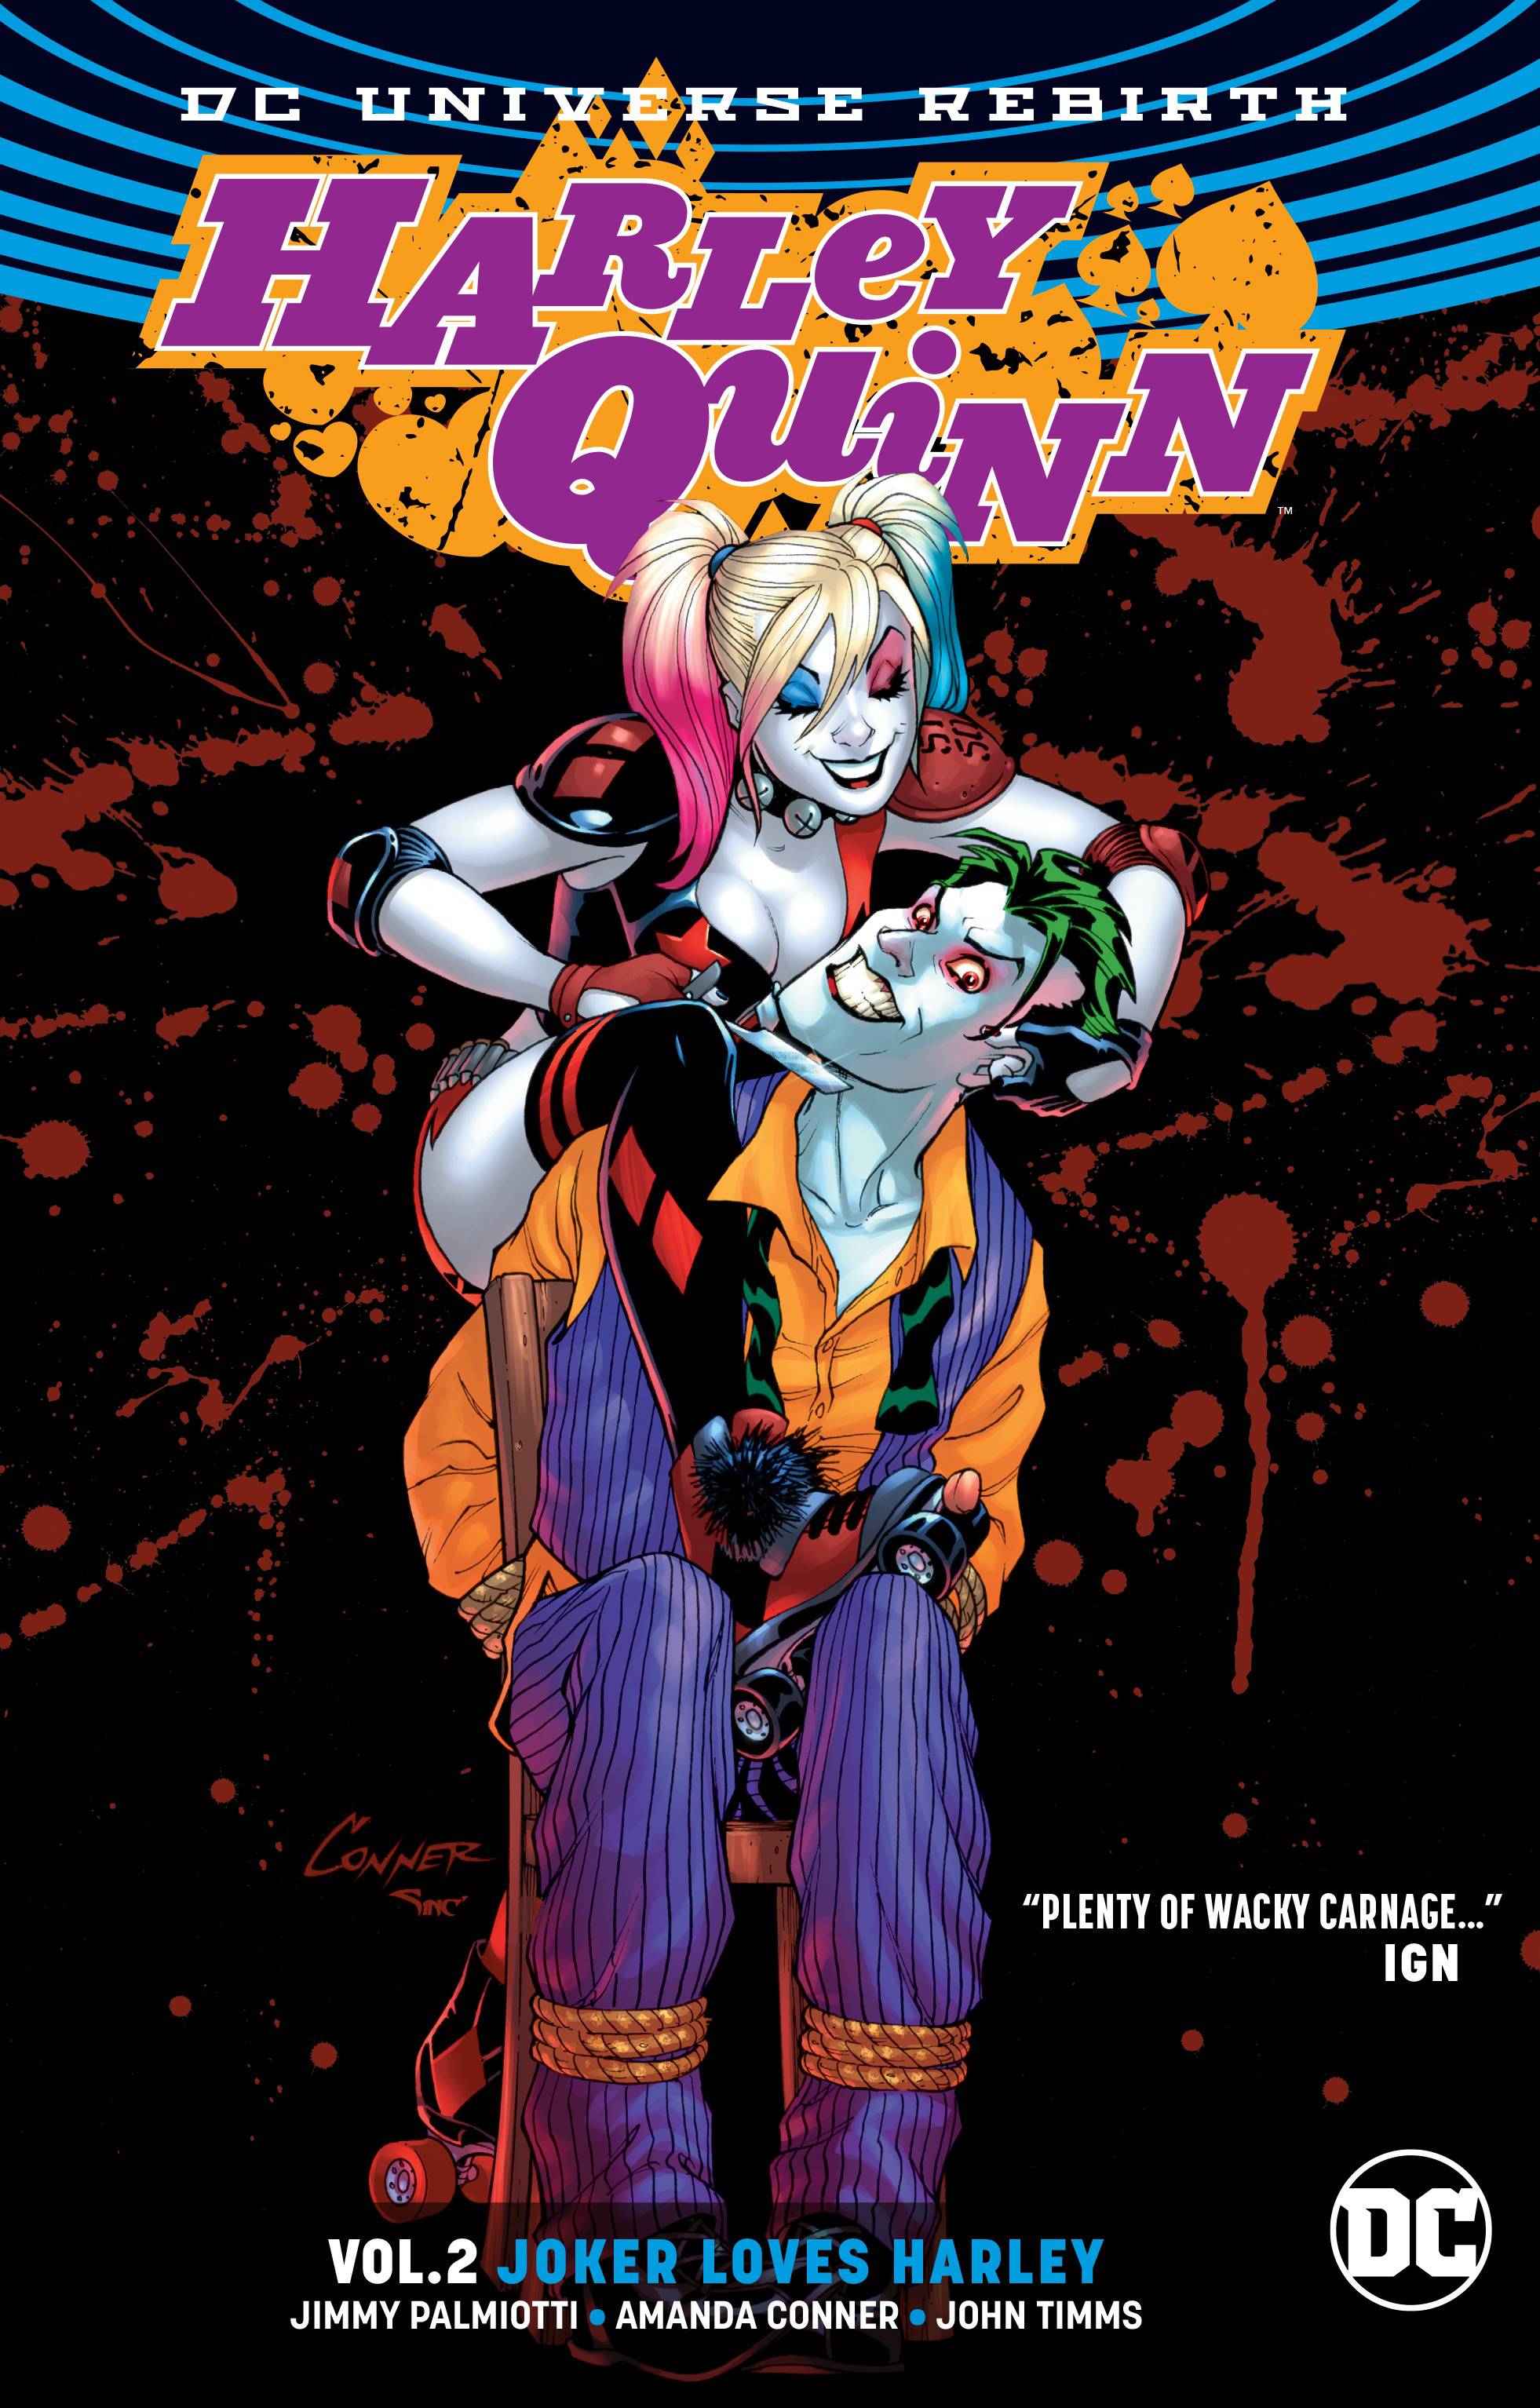 Harley Quinn vol 2: Joker Loves Harley s/c (Rebirth)